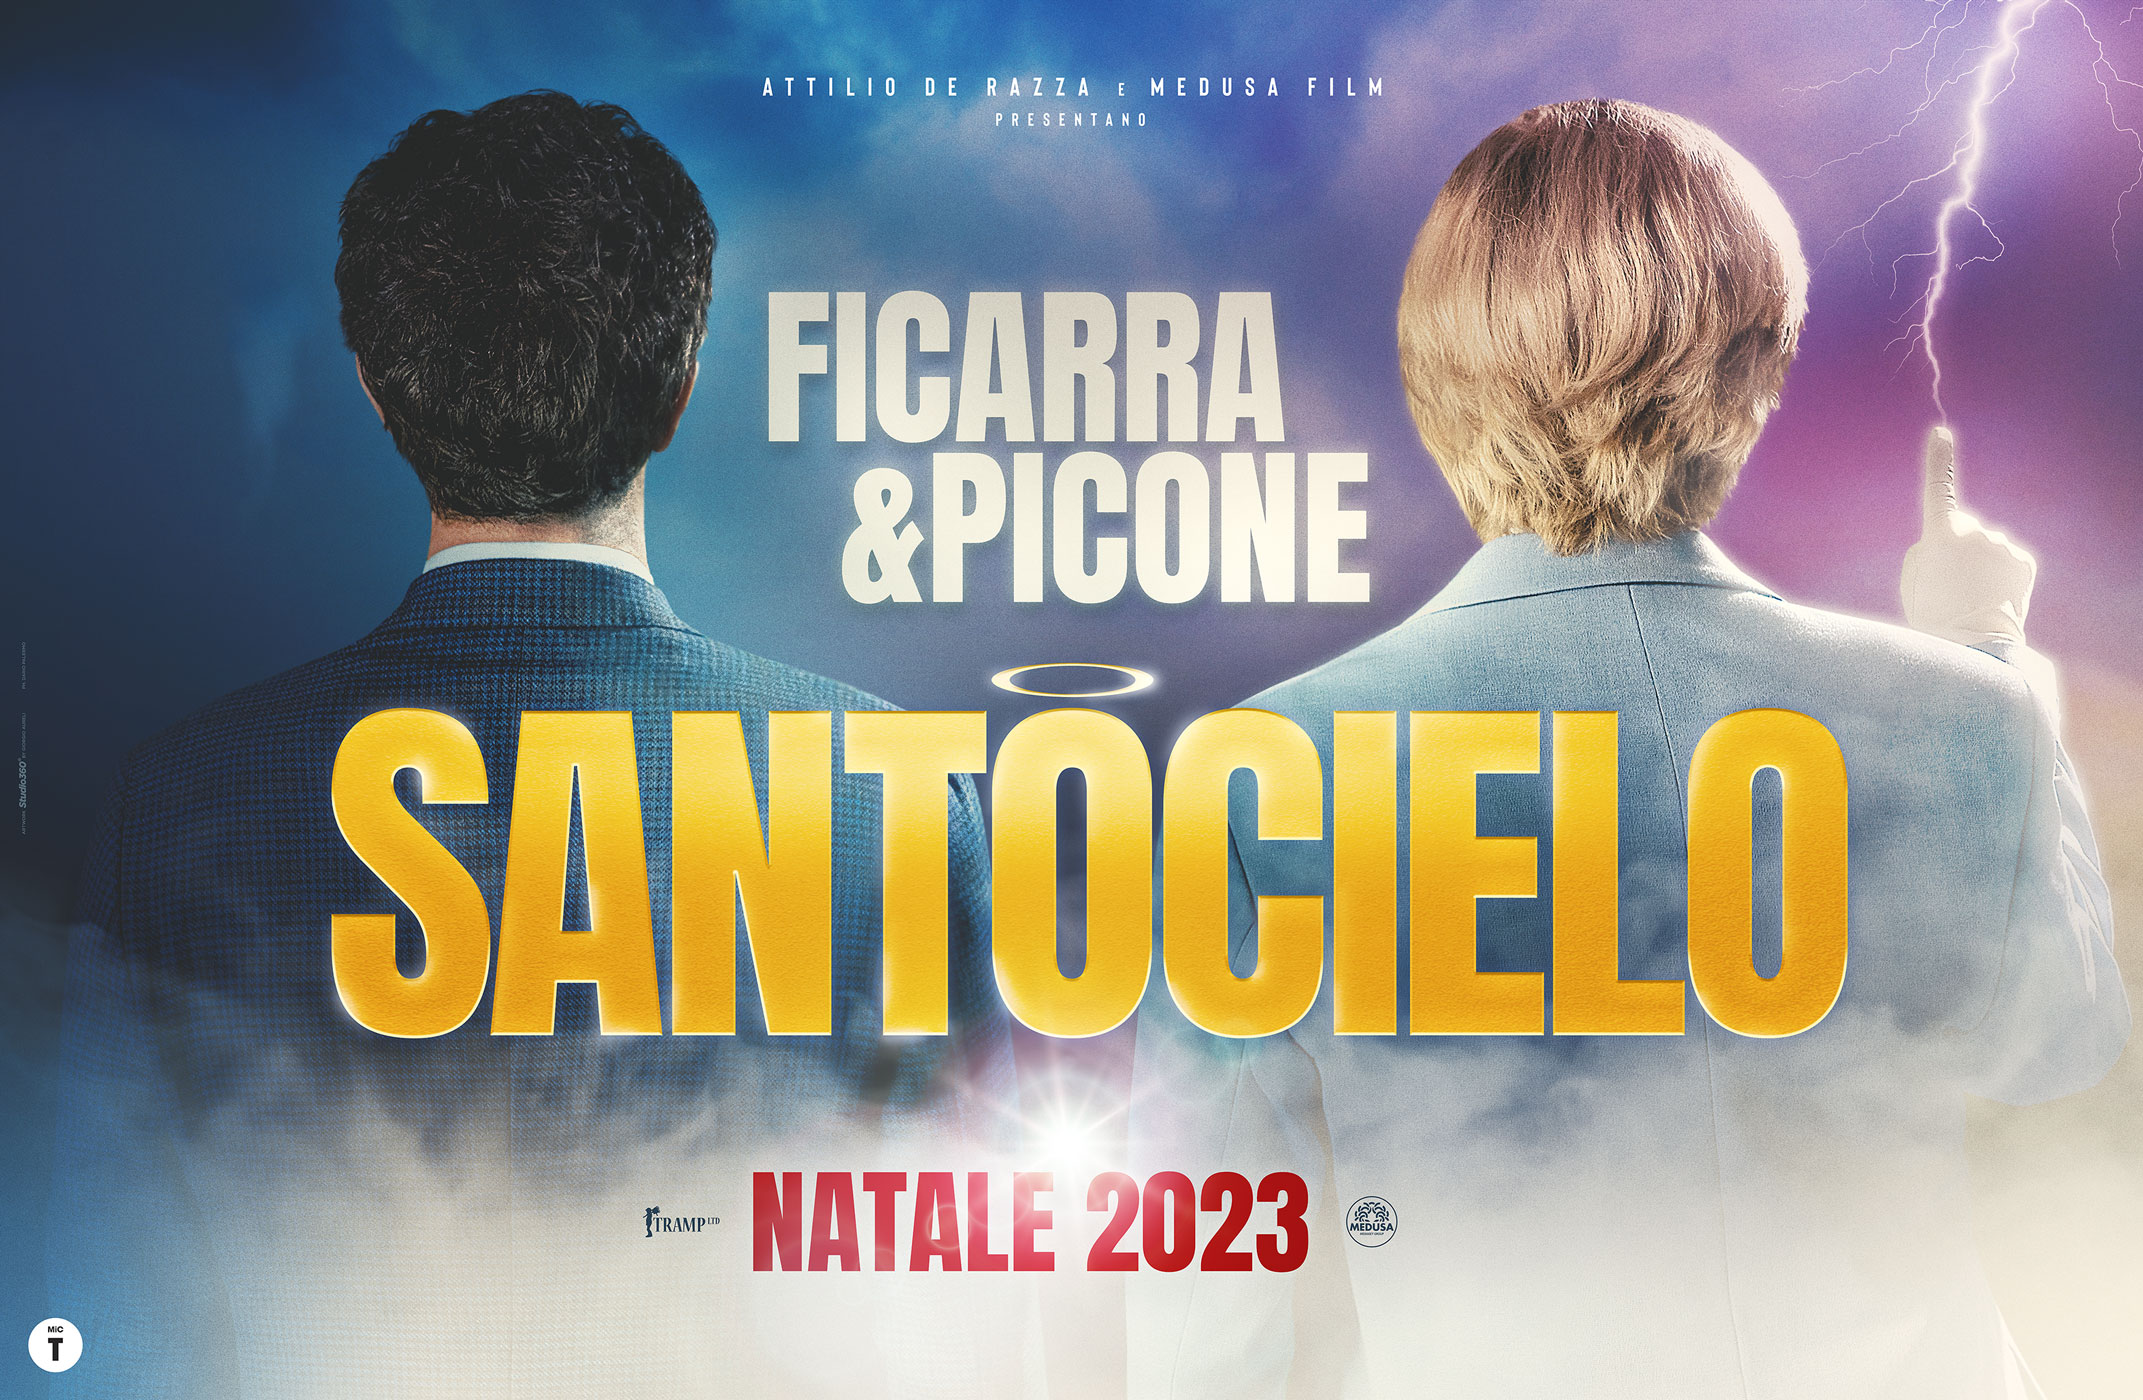 "Santocielo": il nuovo Film di Ficarra e Picone al cinema dal 14 dicembre